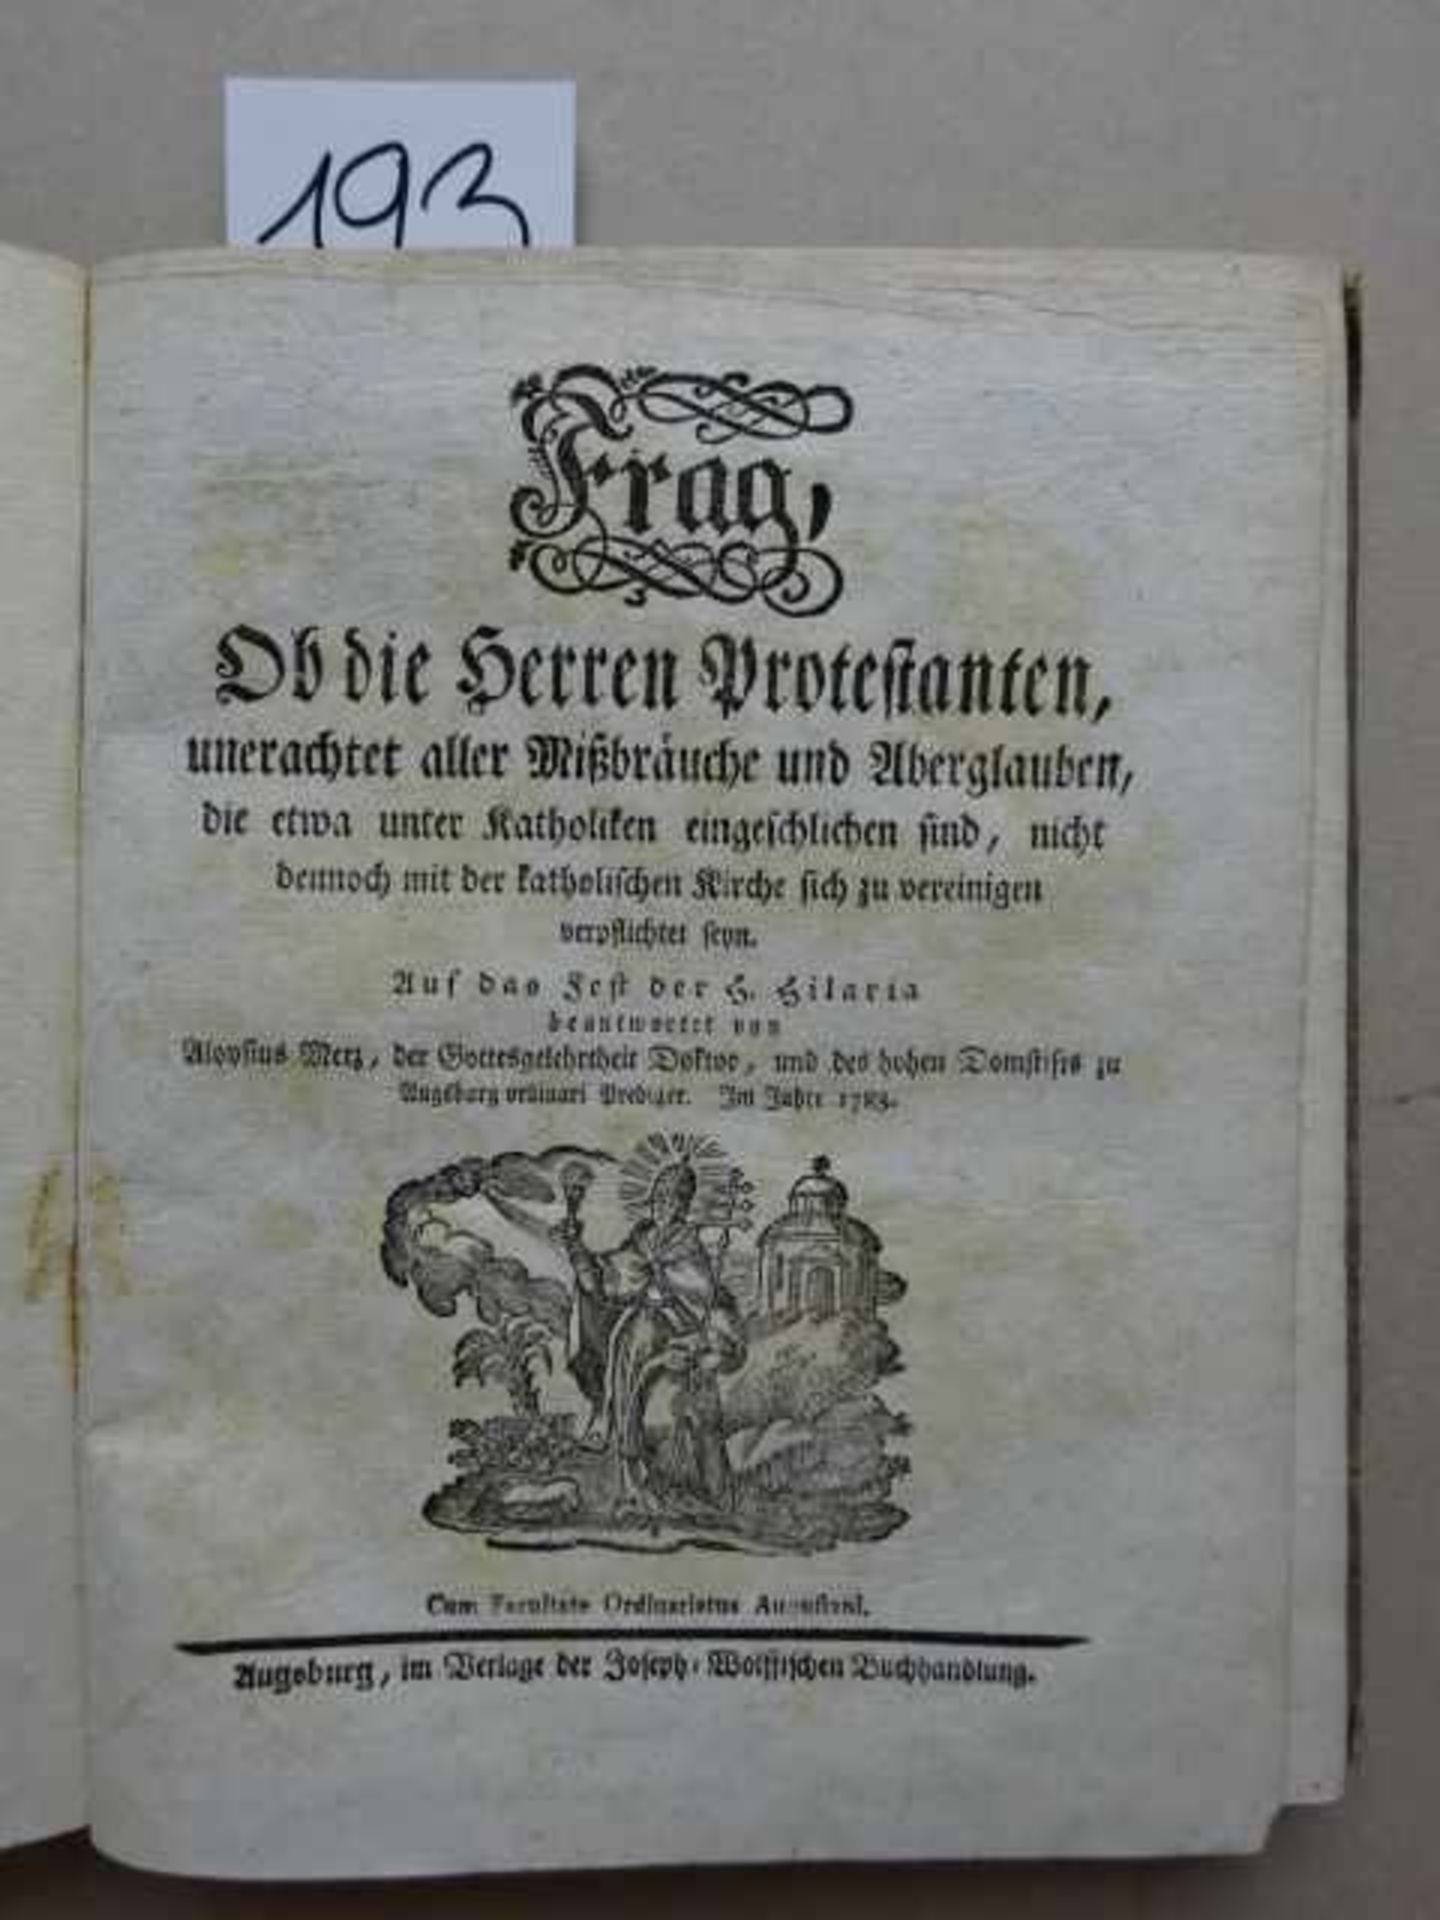 Merz, A. (Heilige Streitreden über wichtige Glaubensfragen). 5 Tle. in 1 Bd. Augsburg, Wolff, 1783-